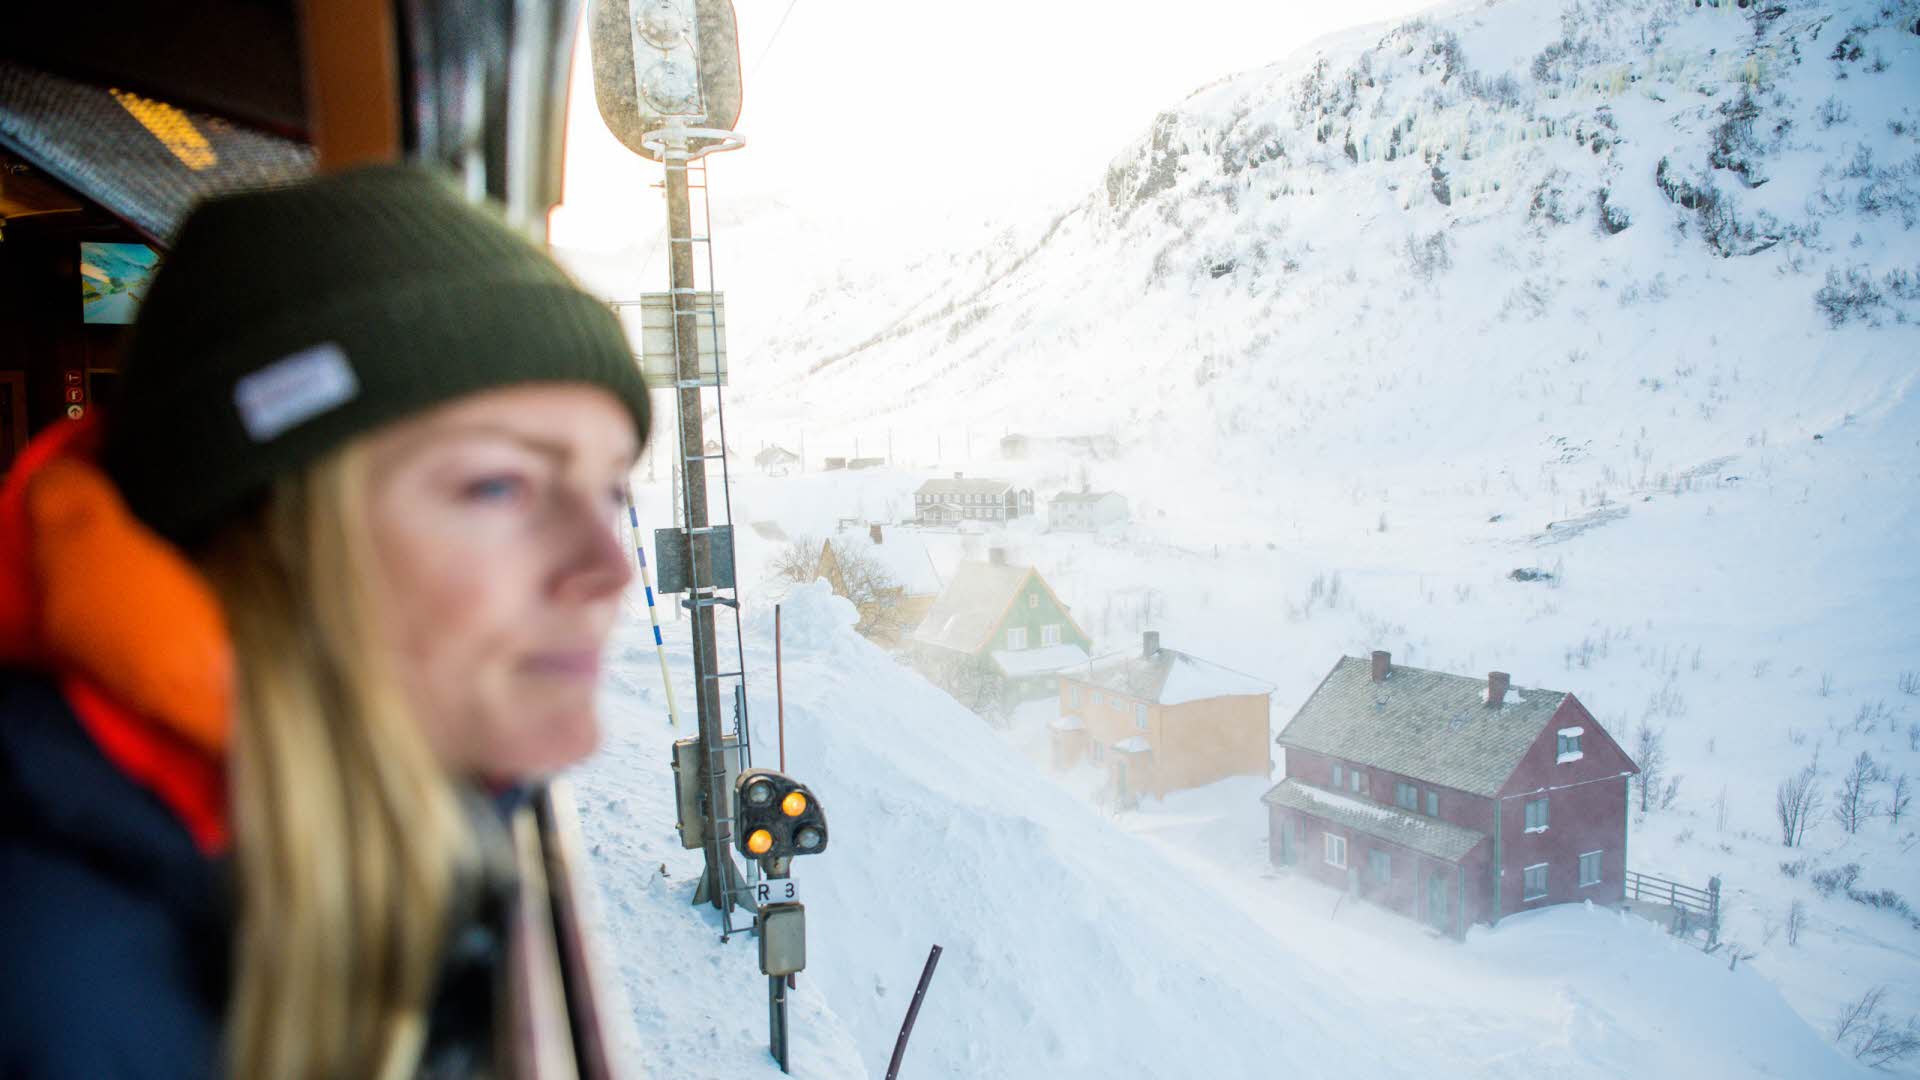 一位戴着帽子的女士从列车的车窗向外看去，冬日雪景中弗洛姆铁路旁有几幢房子。